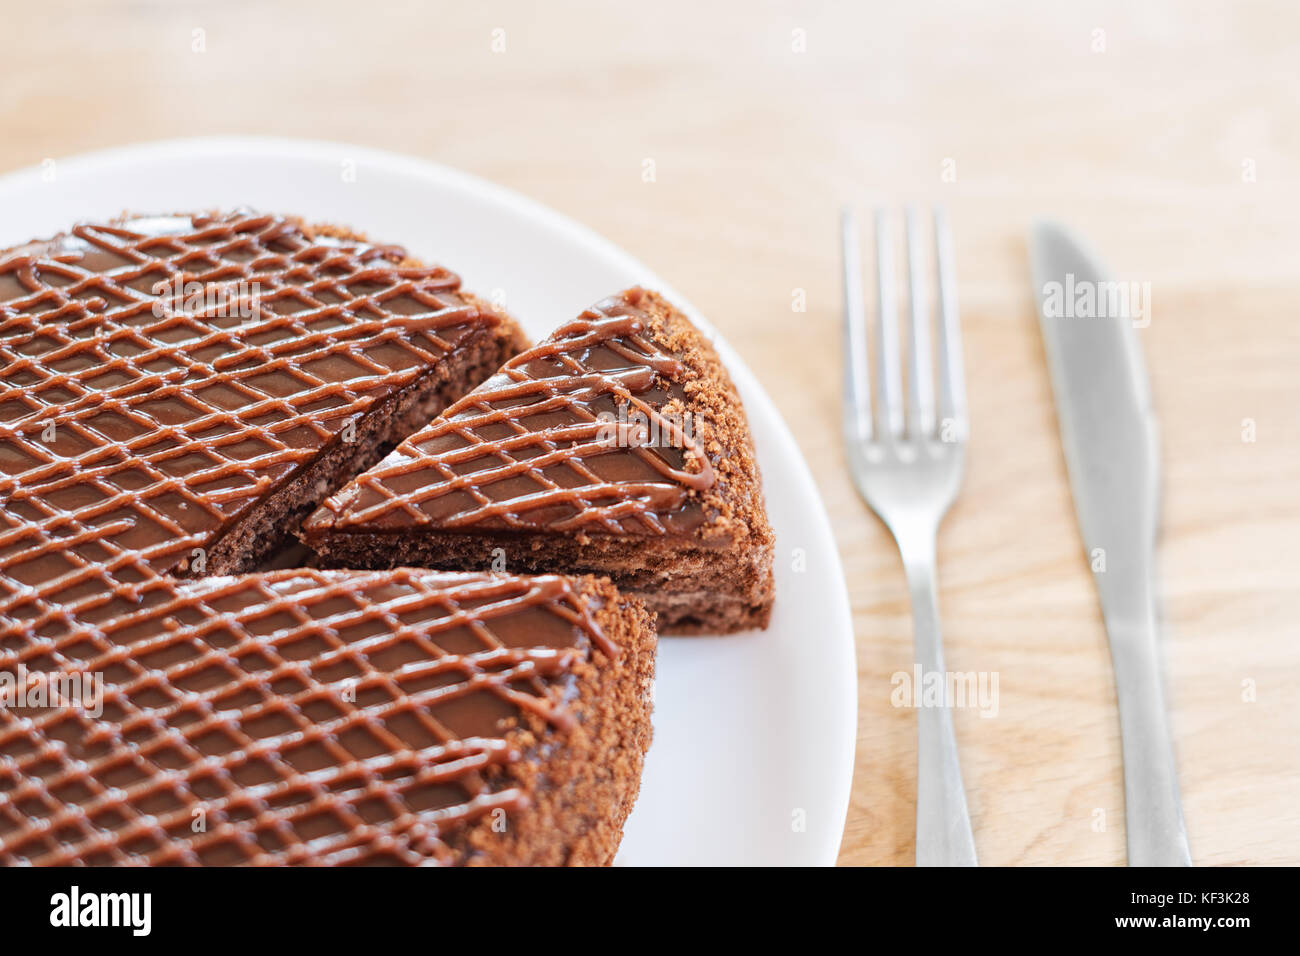 In Scheiben geschnitten serviert leckere Schokoladenkuchen auf hölzernen Tisch Hintergrund. Stoppen Sie die Diät Konzept, Ziel und Ende für gesundes Essen Stockfoto